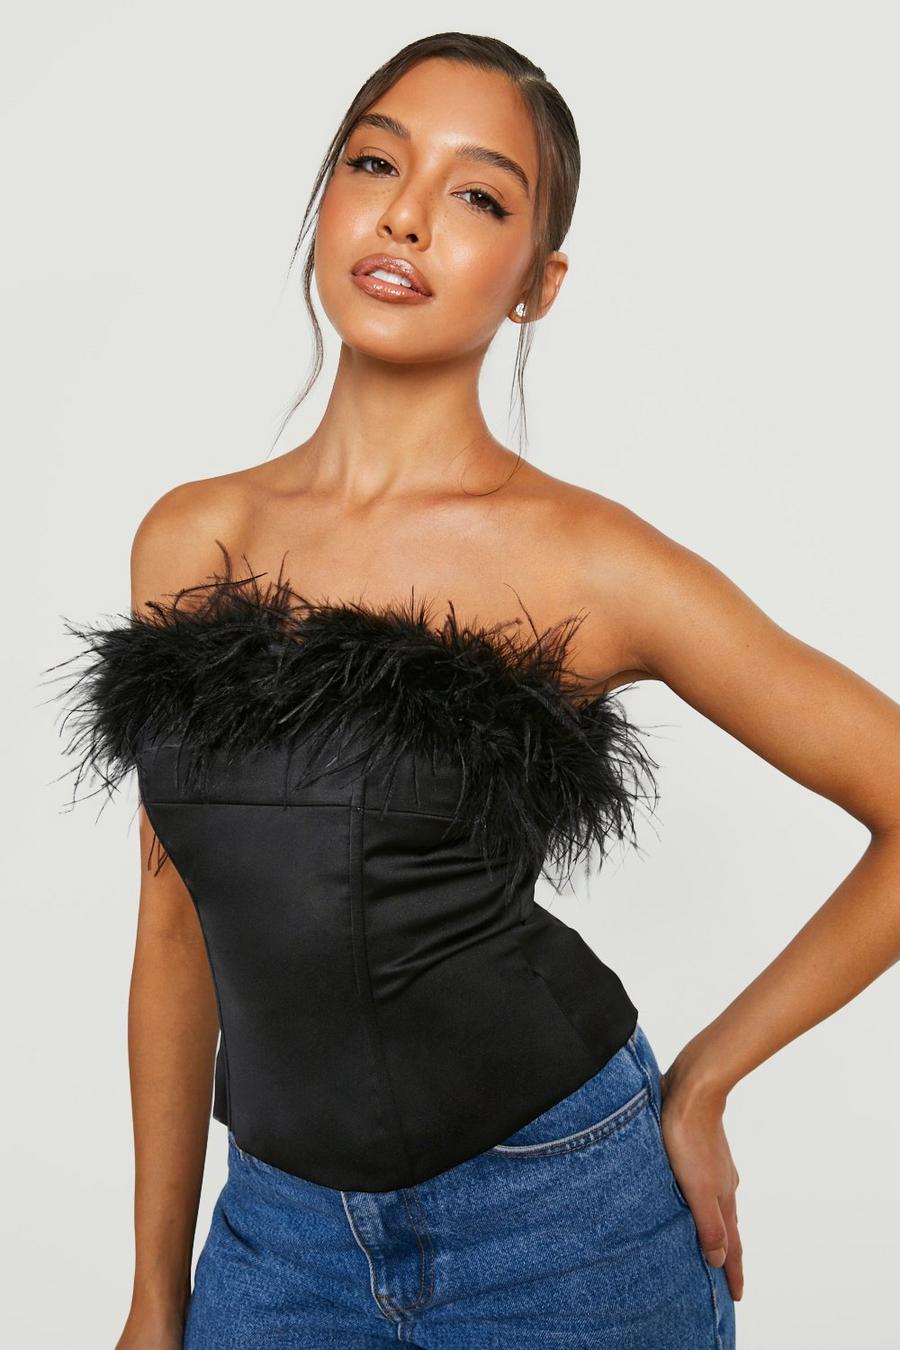 https://media.boohoo.com/i/boohoo/gzz15797_black_xl/female-black-feather-bandeau-corset-top/?w=900&qlt=default&fmt.jp2.qlt=70&fmt=auto&sm=fit